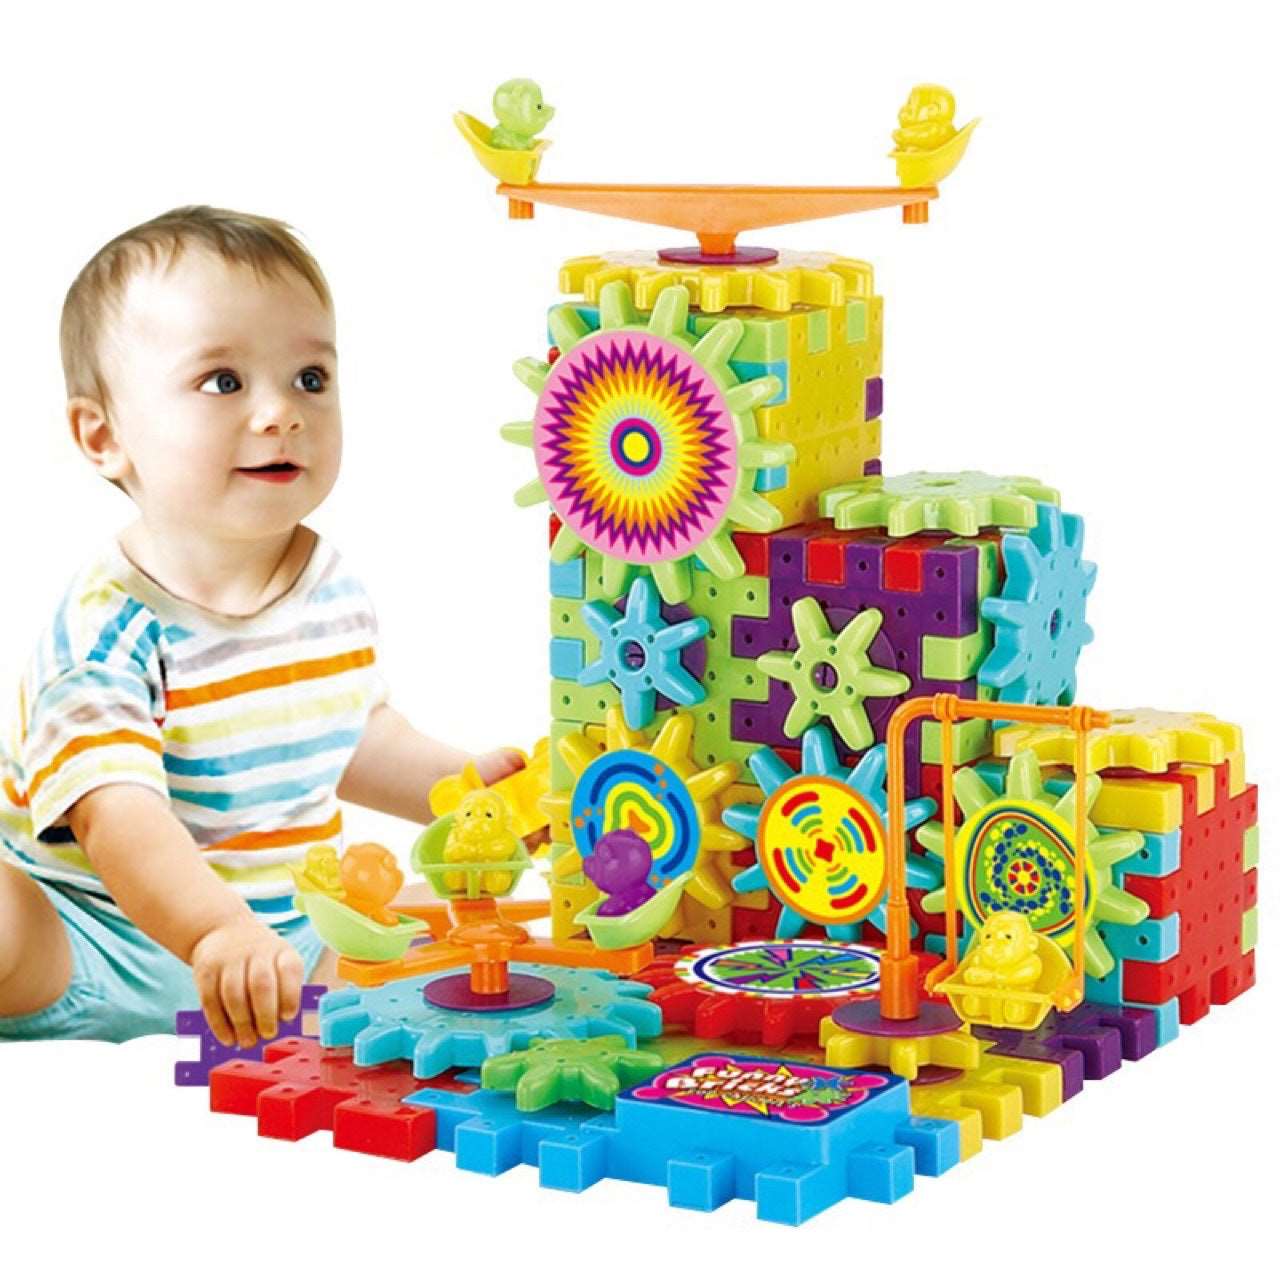 3D Model Building Kits Plastic Brick Blocks Educational Toys Toys